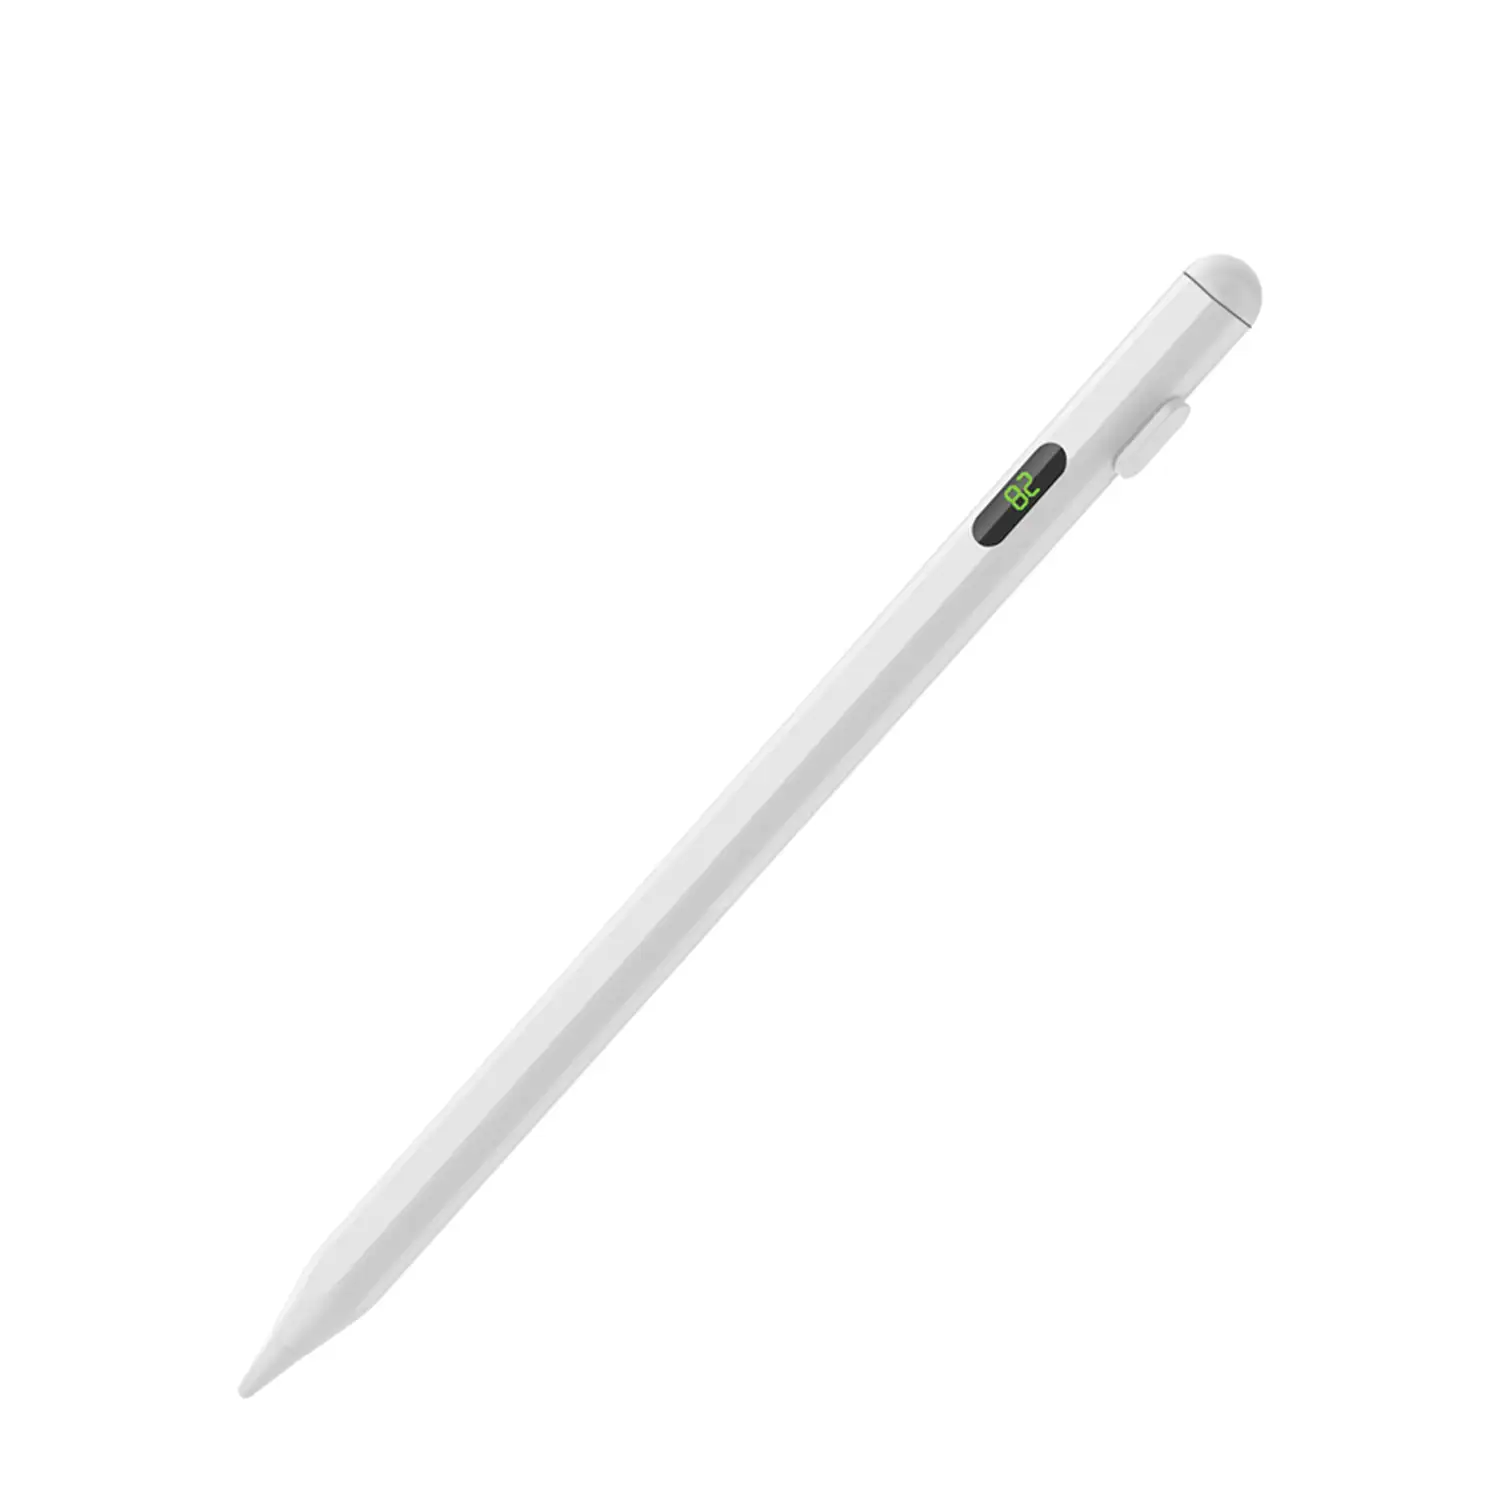 Pencil Pen 2268 profesional para iPad. Carga USB-C.